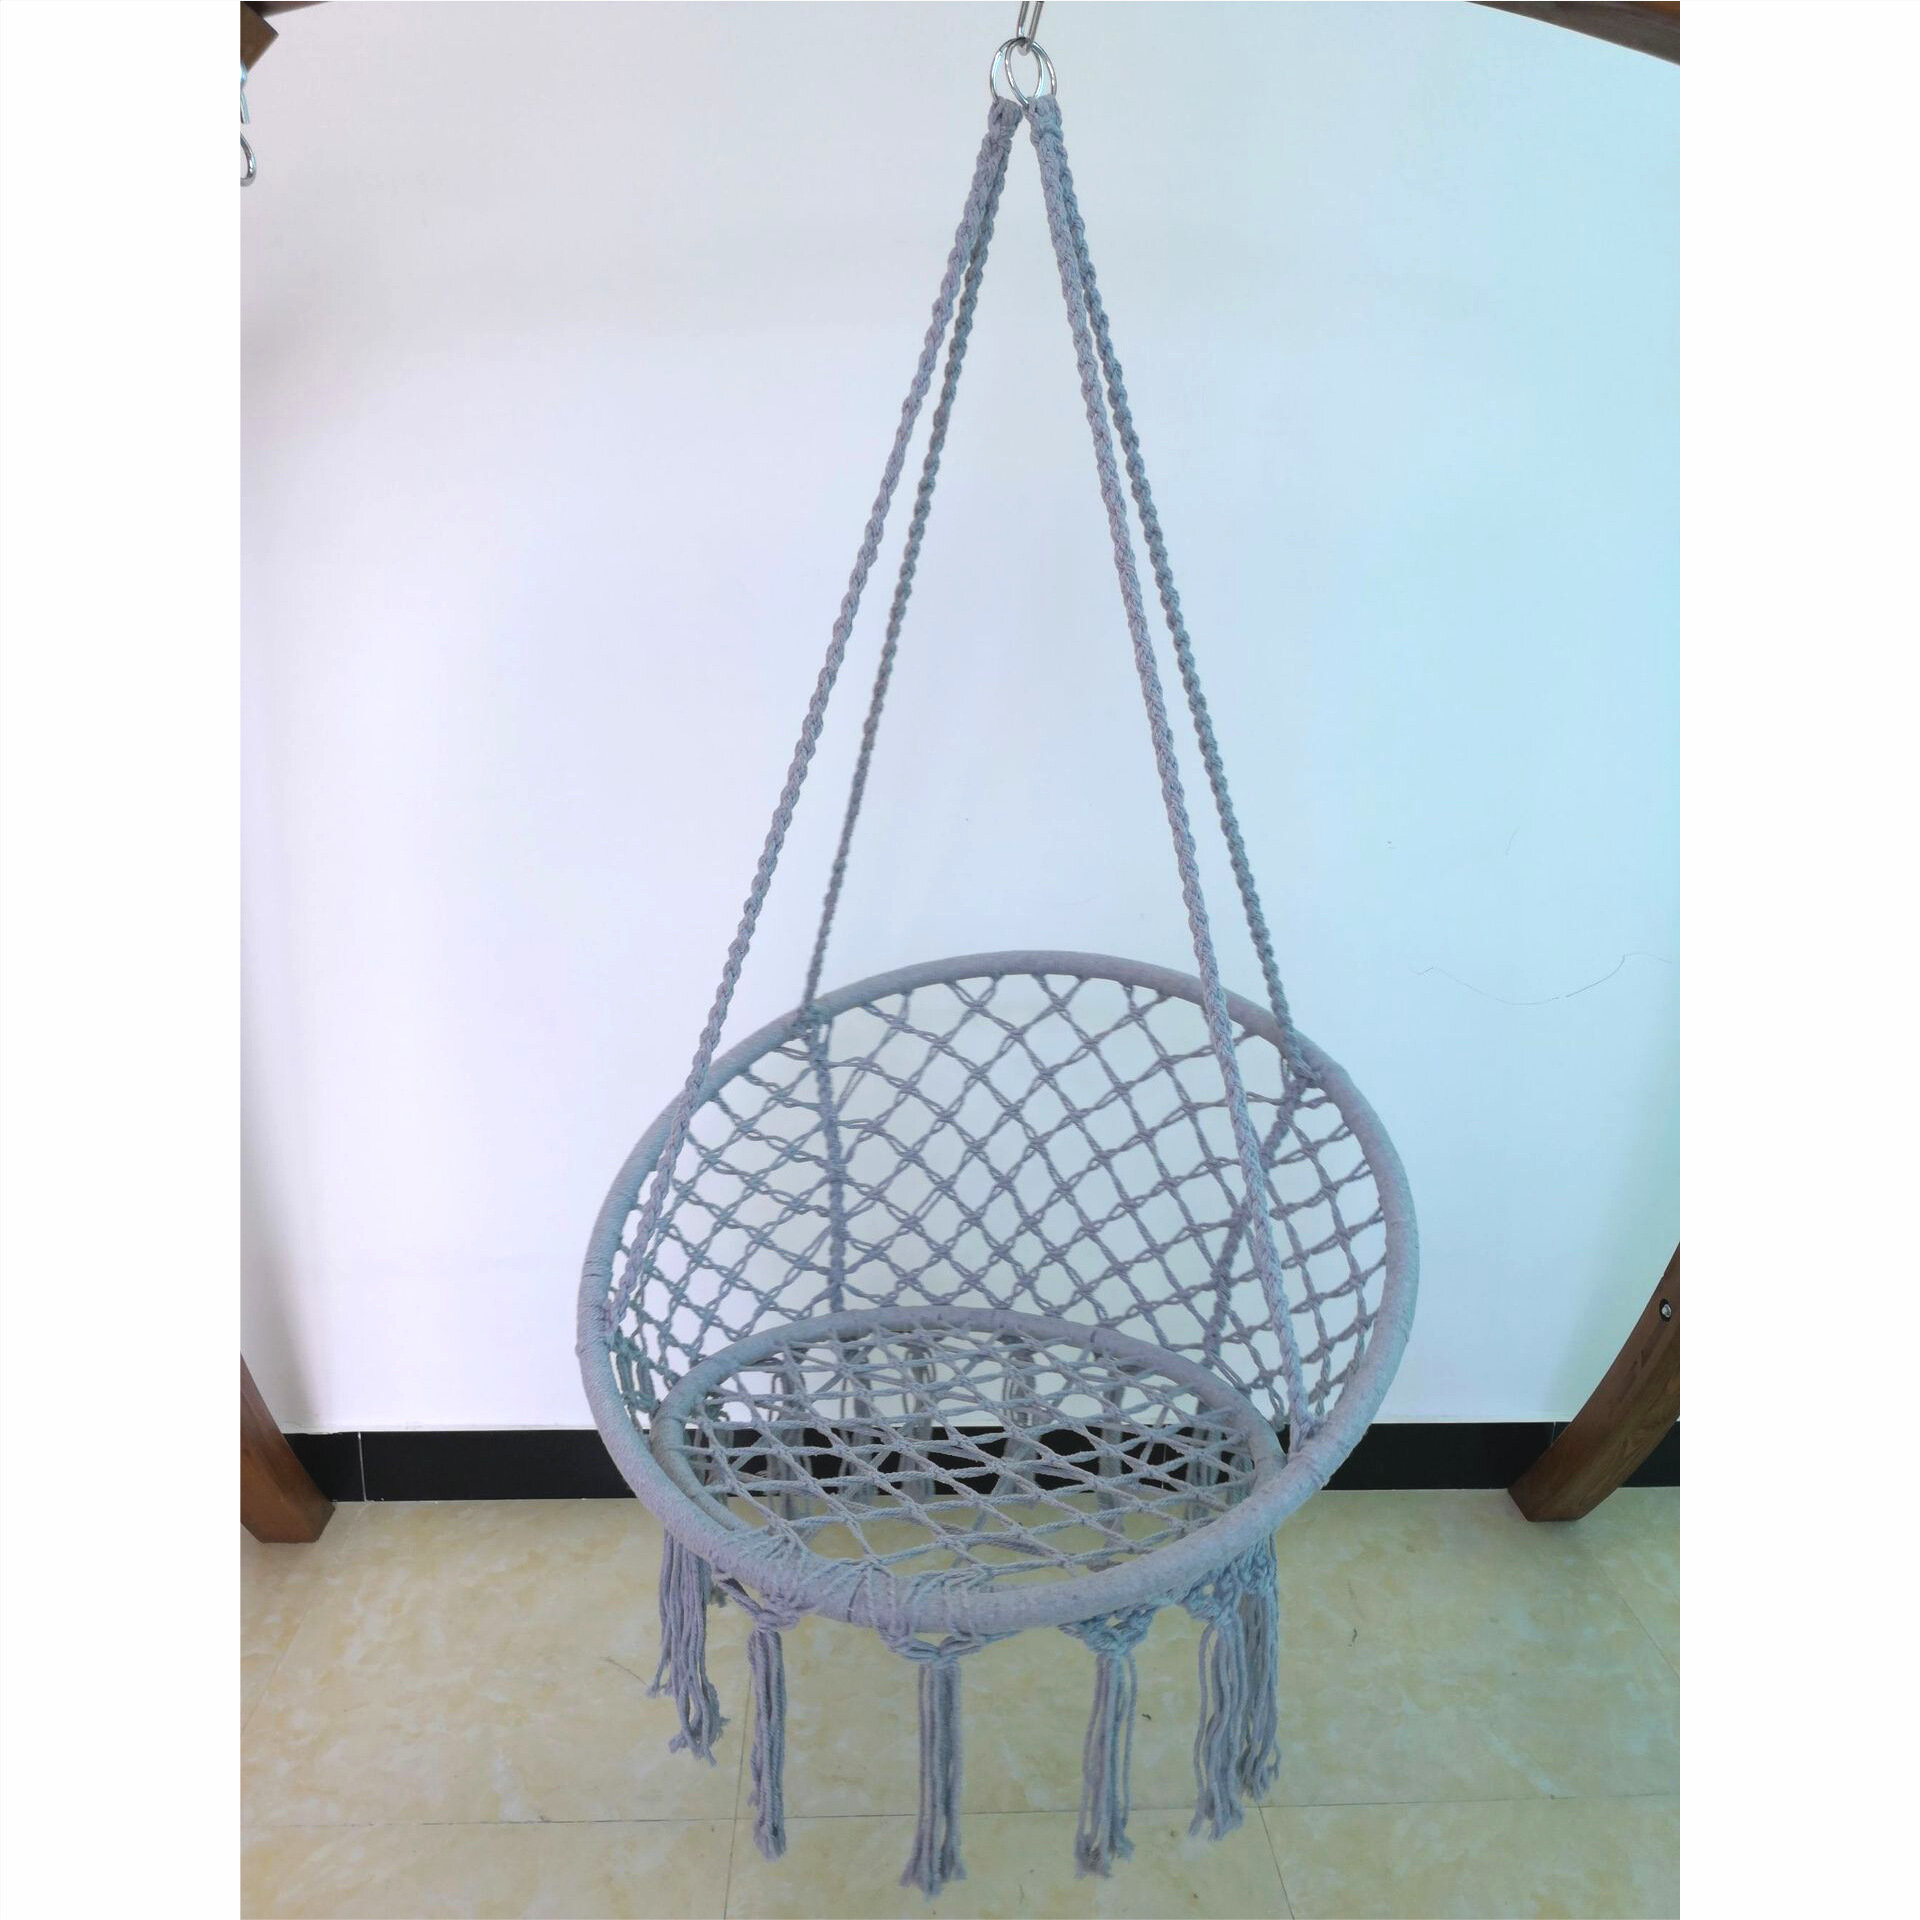 

Hanging Basket Outdoor Swing Hanging Chair Indoor Leisure Cradle Woven Tassel Balcony